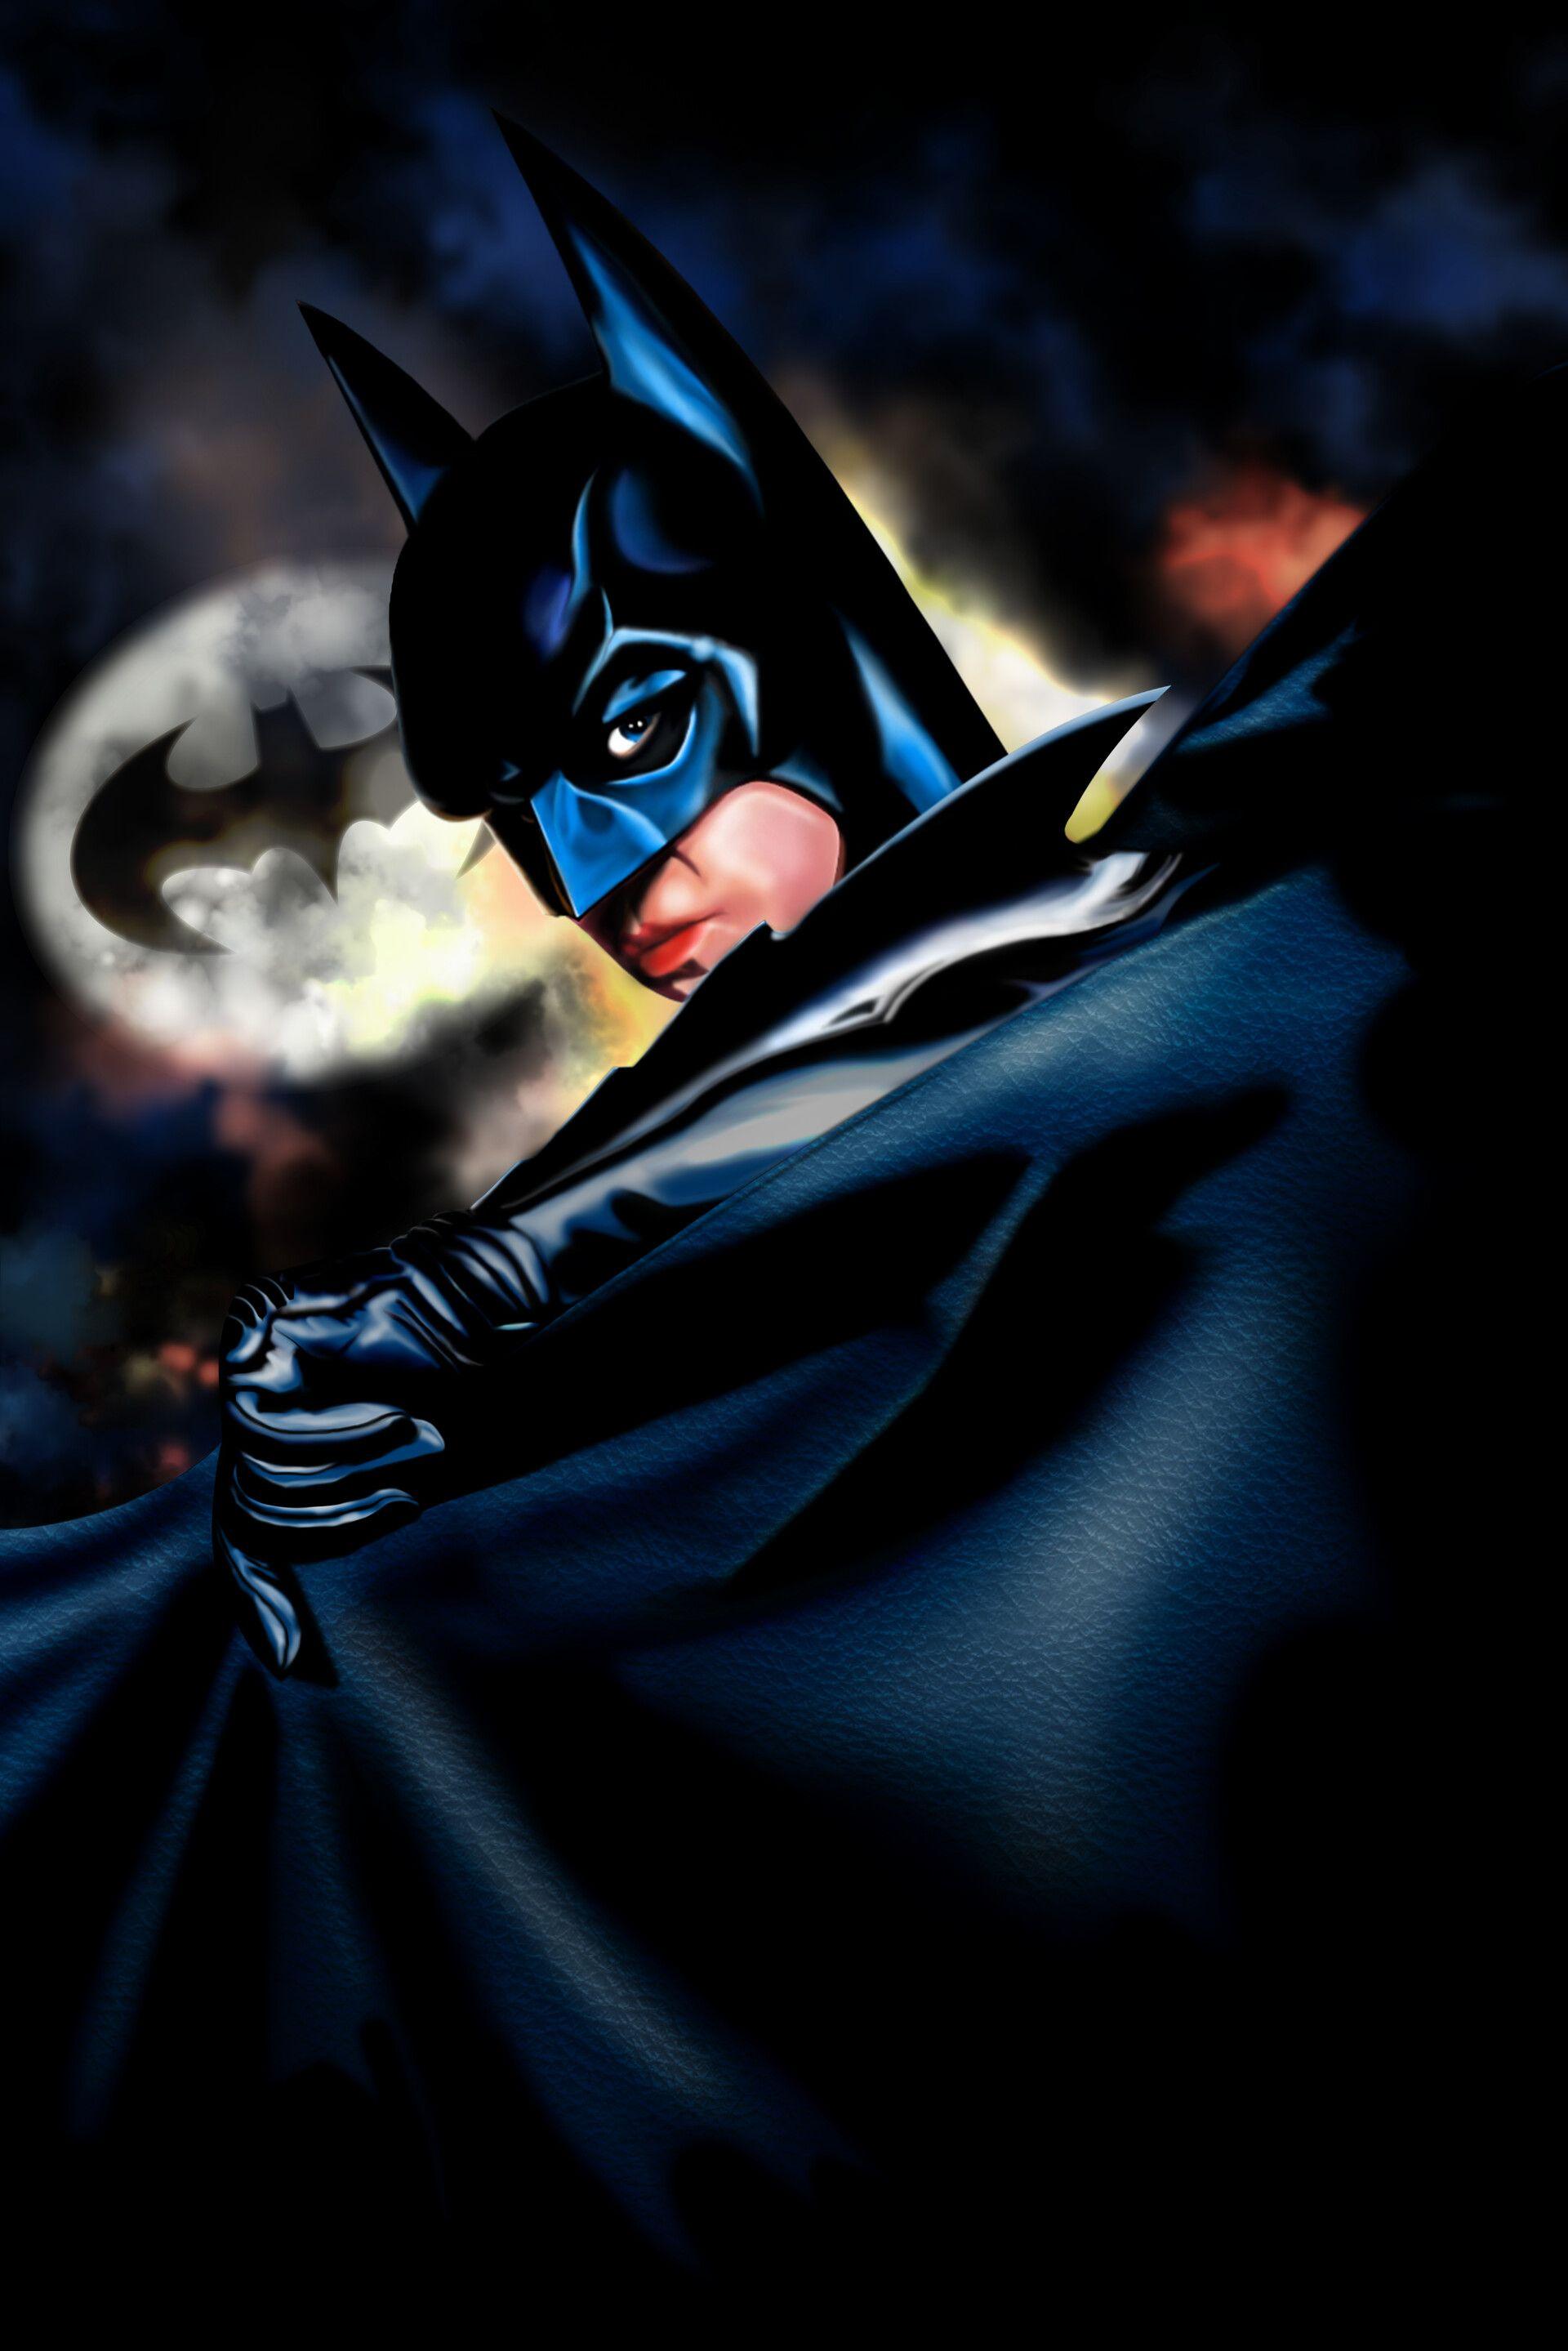 Batman Forever Poster by Jonathan SparksBatman Forever has always